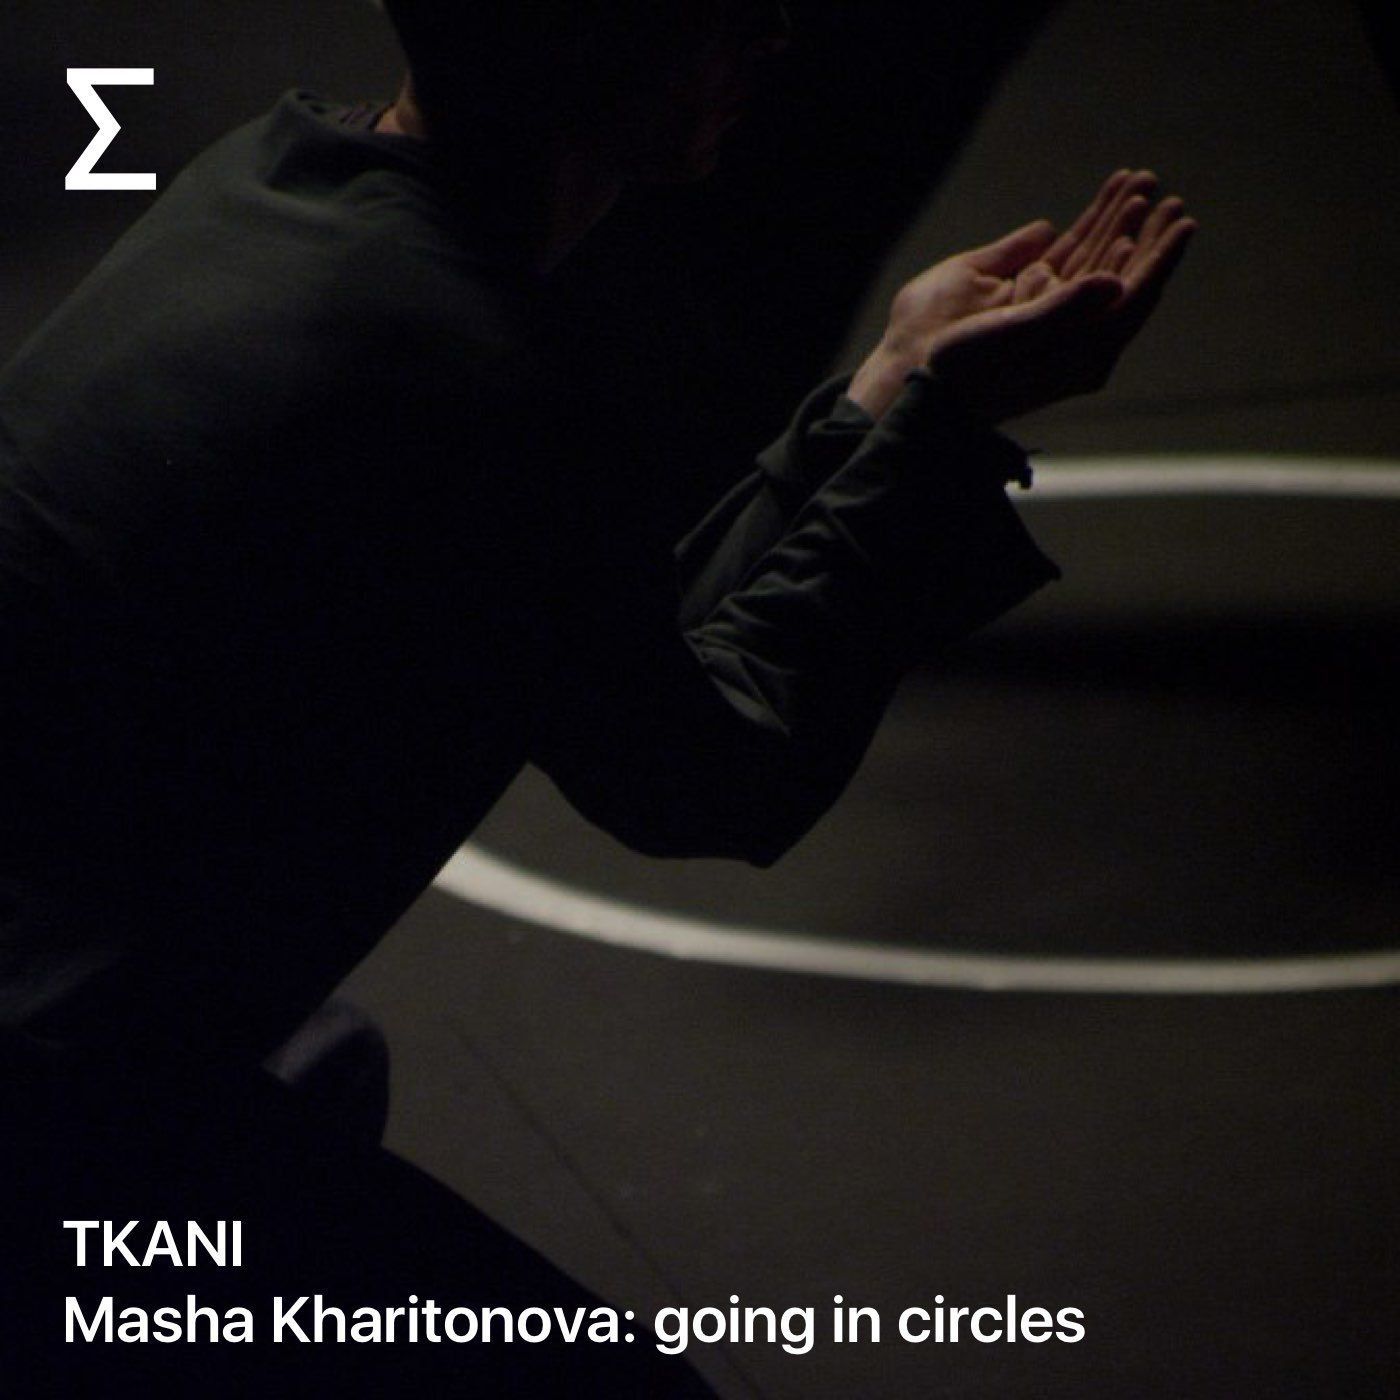 TKANI – Masha Kharitonova: going in circles